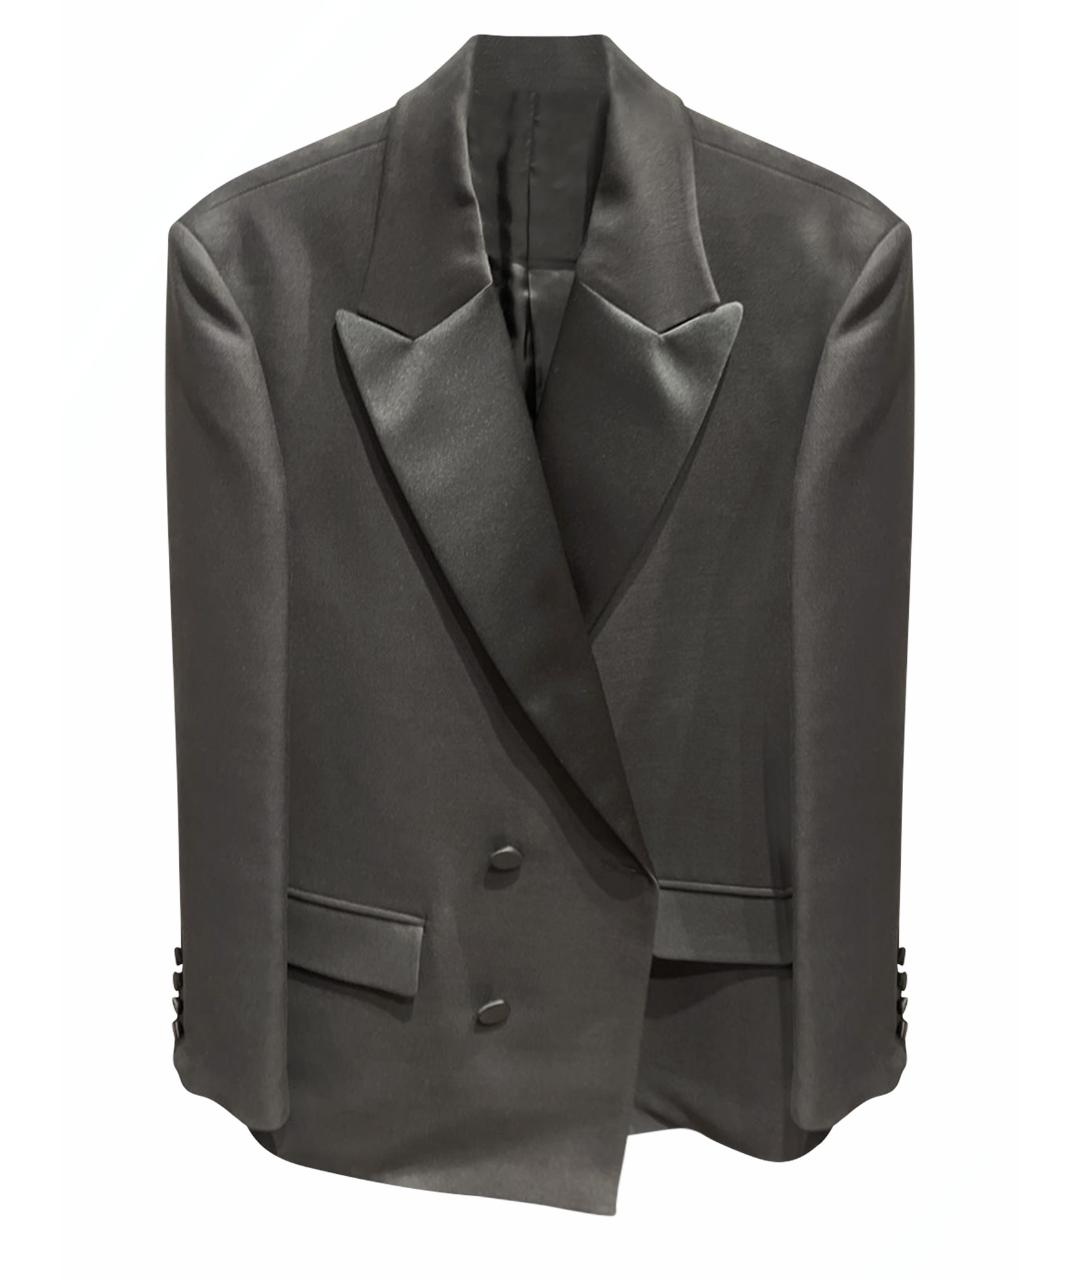 VALENTINO Черный шерстяной жакет/пиджак, фото 1